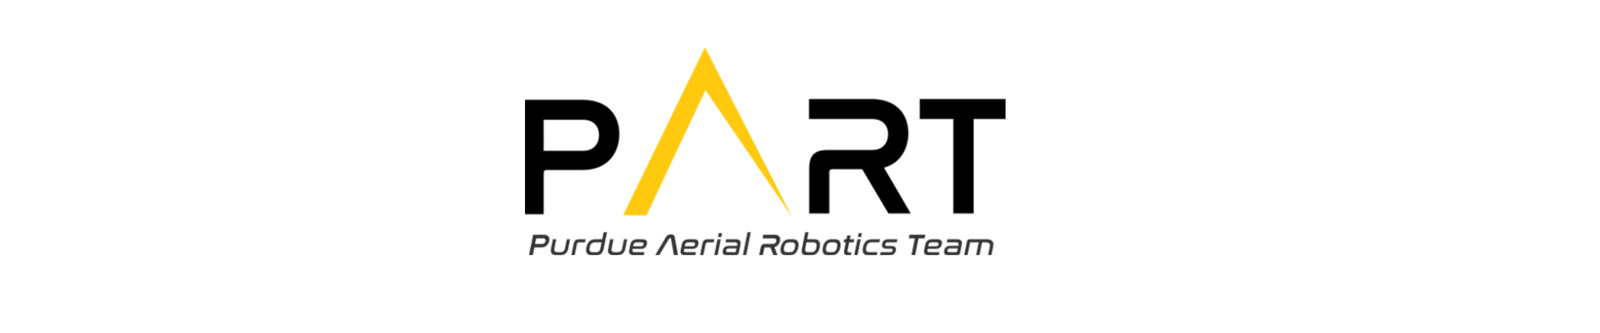 Purdue Aerial Robotics Team